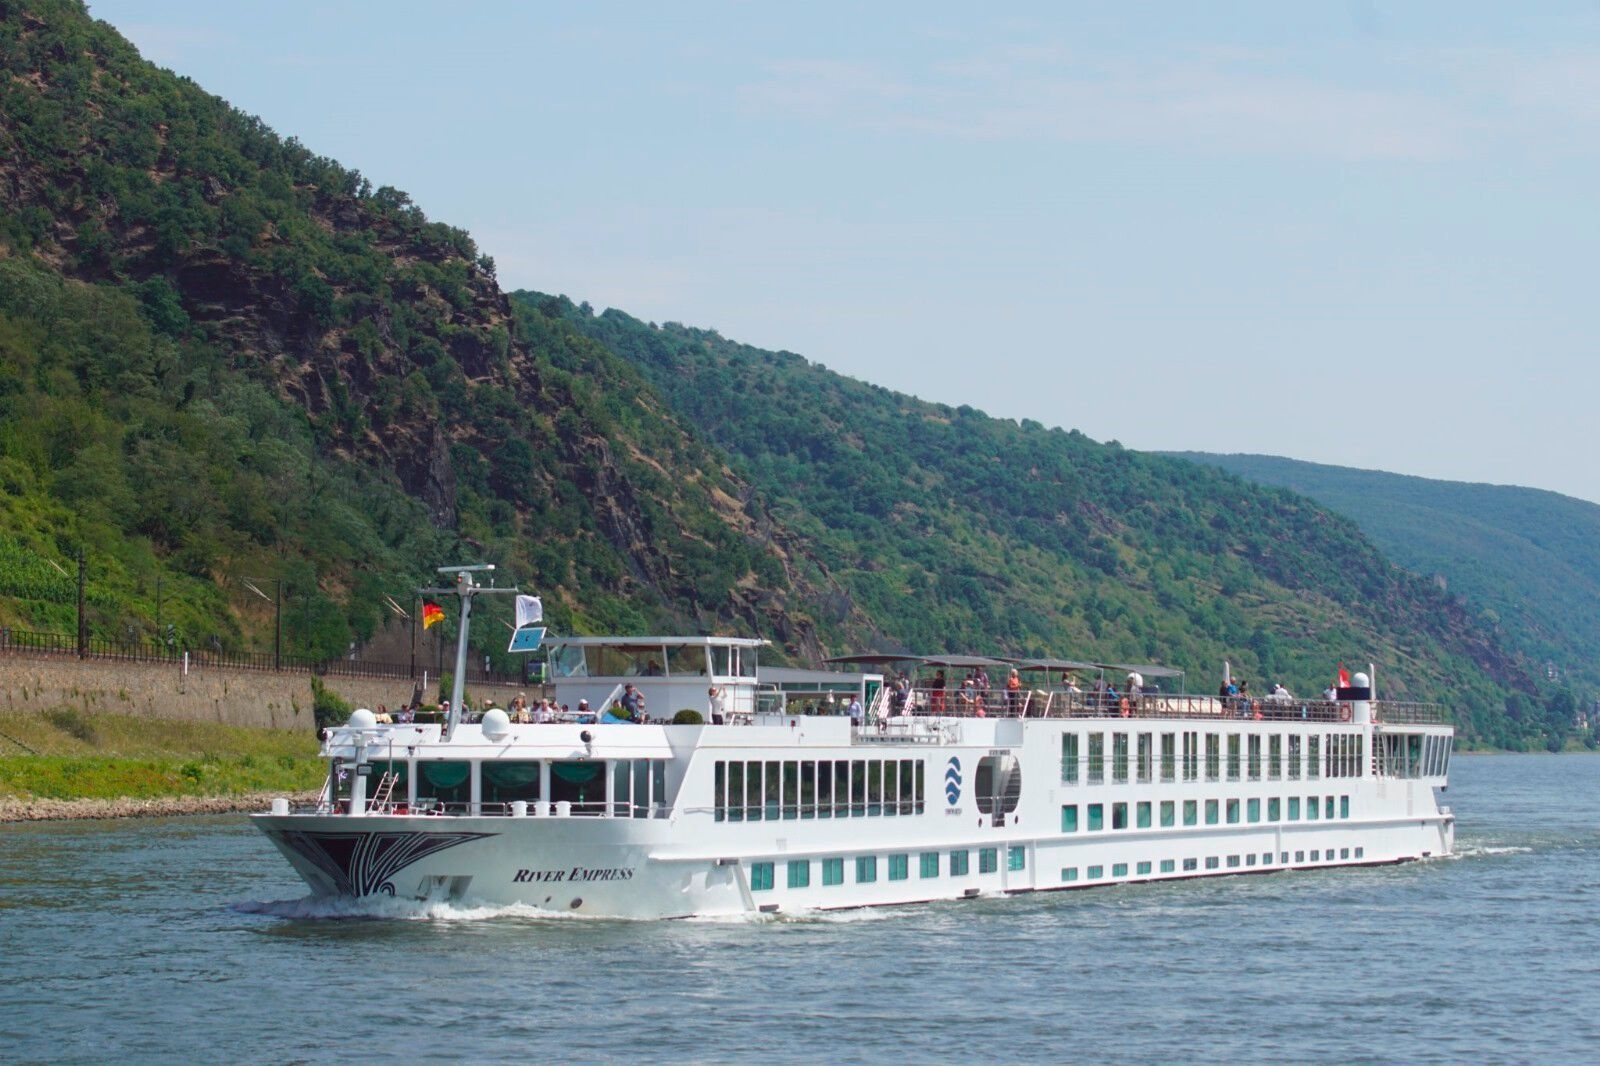 Compass Empress - Donauzauber: Flusskreuzfahrt durch charmante Städte und malerische Landschaften